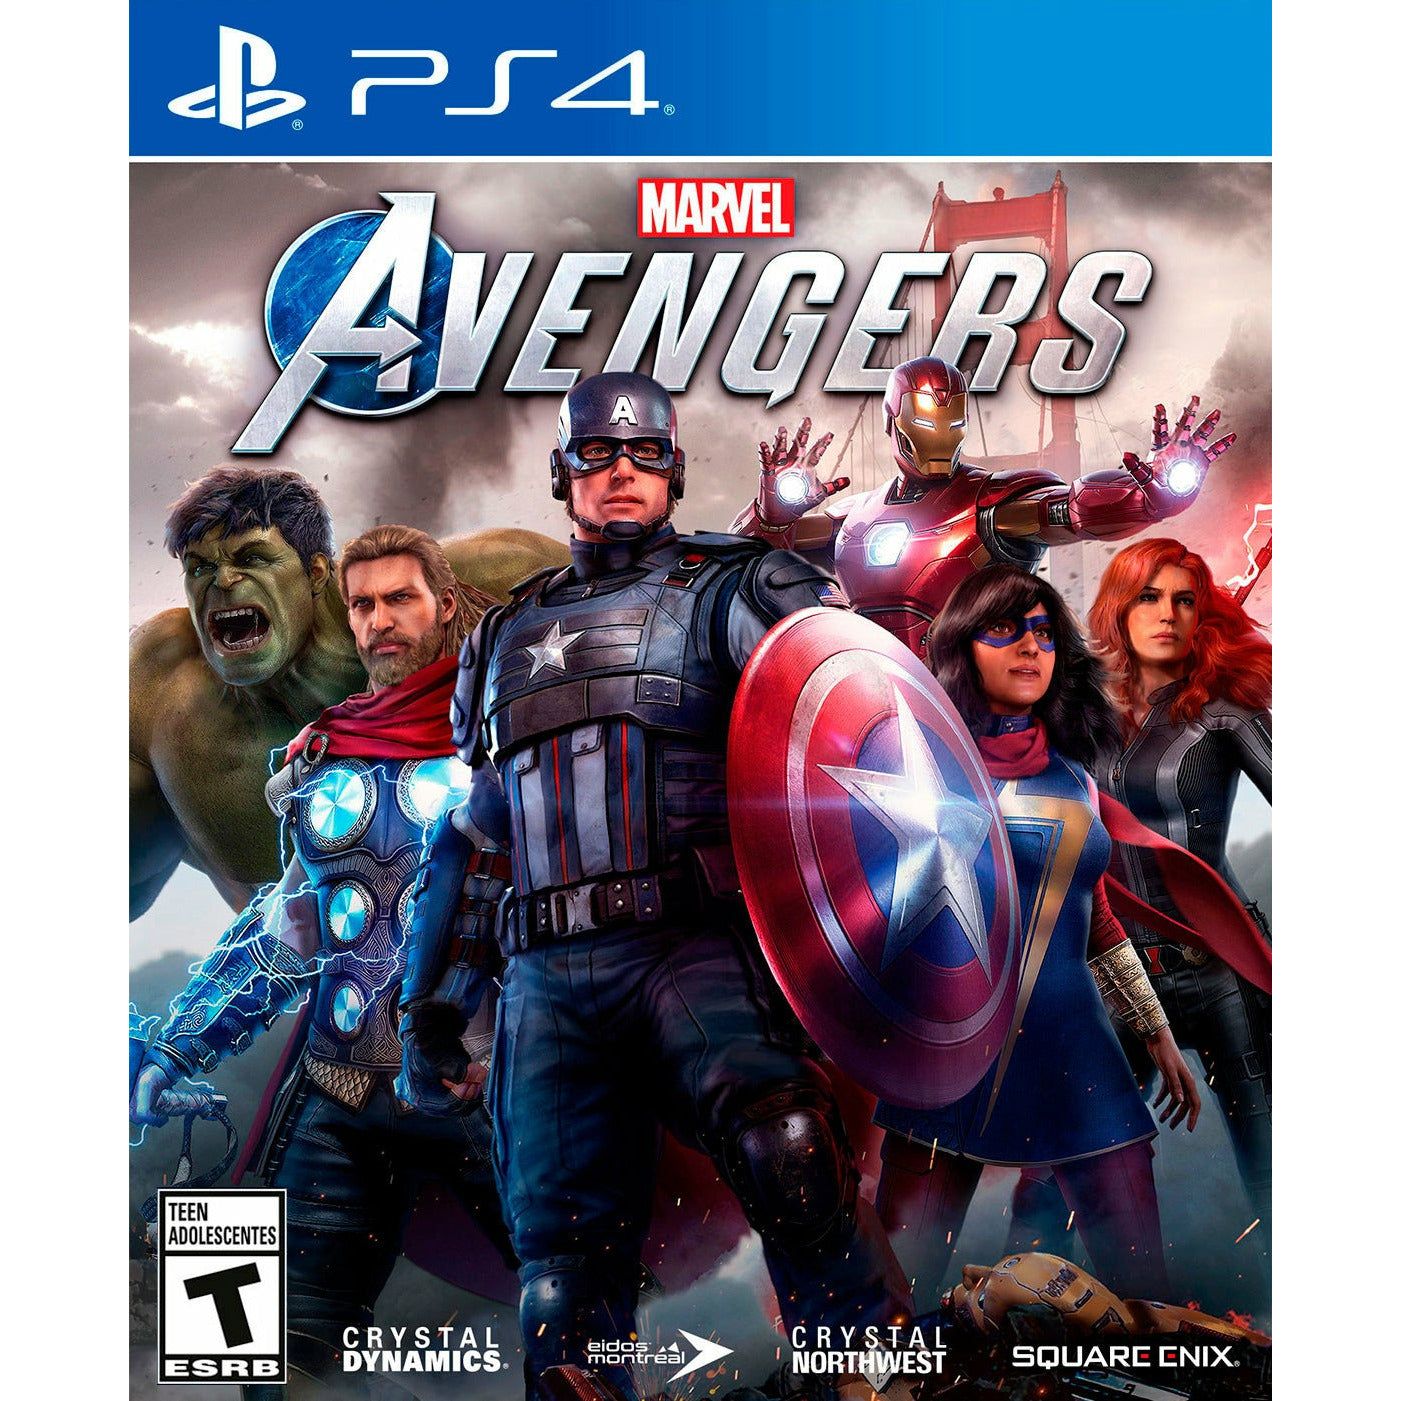 PS4 - Marvel Avengers